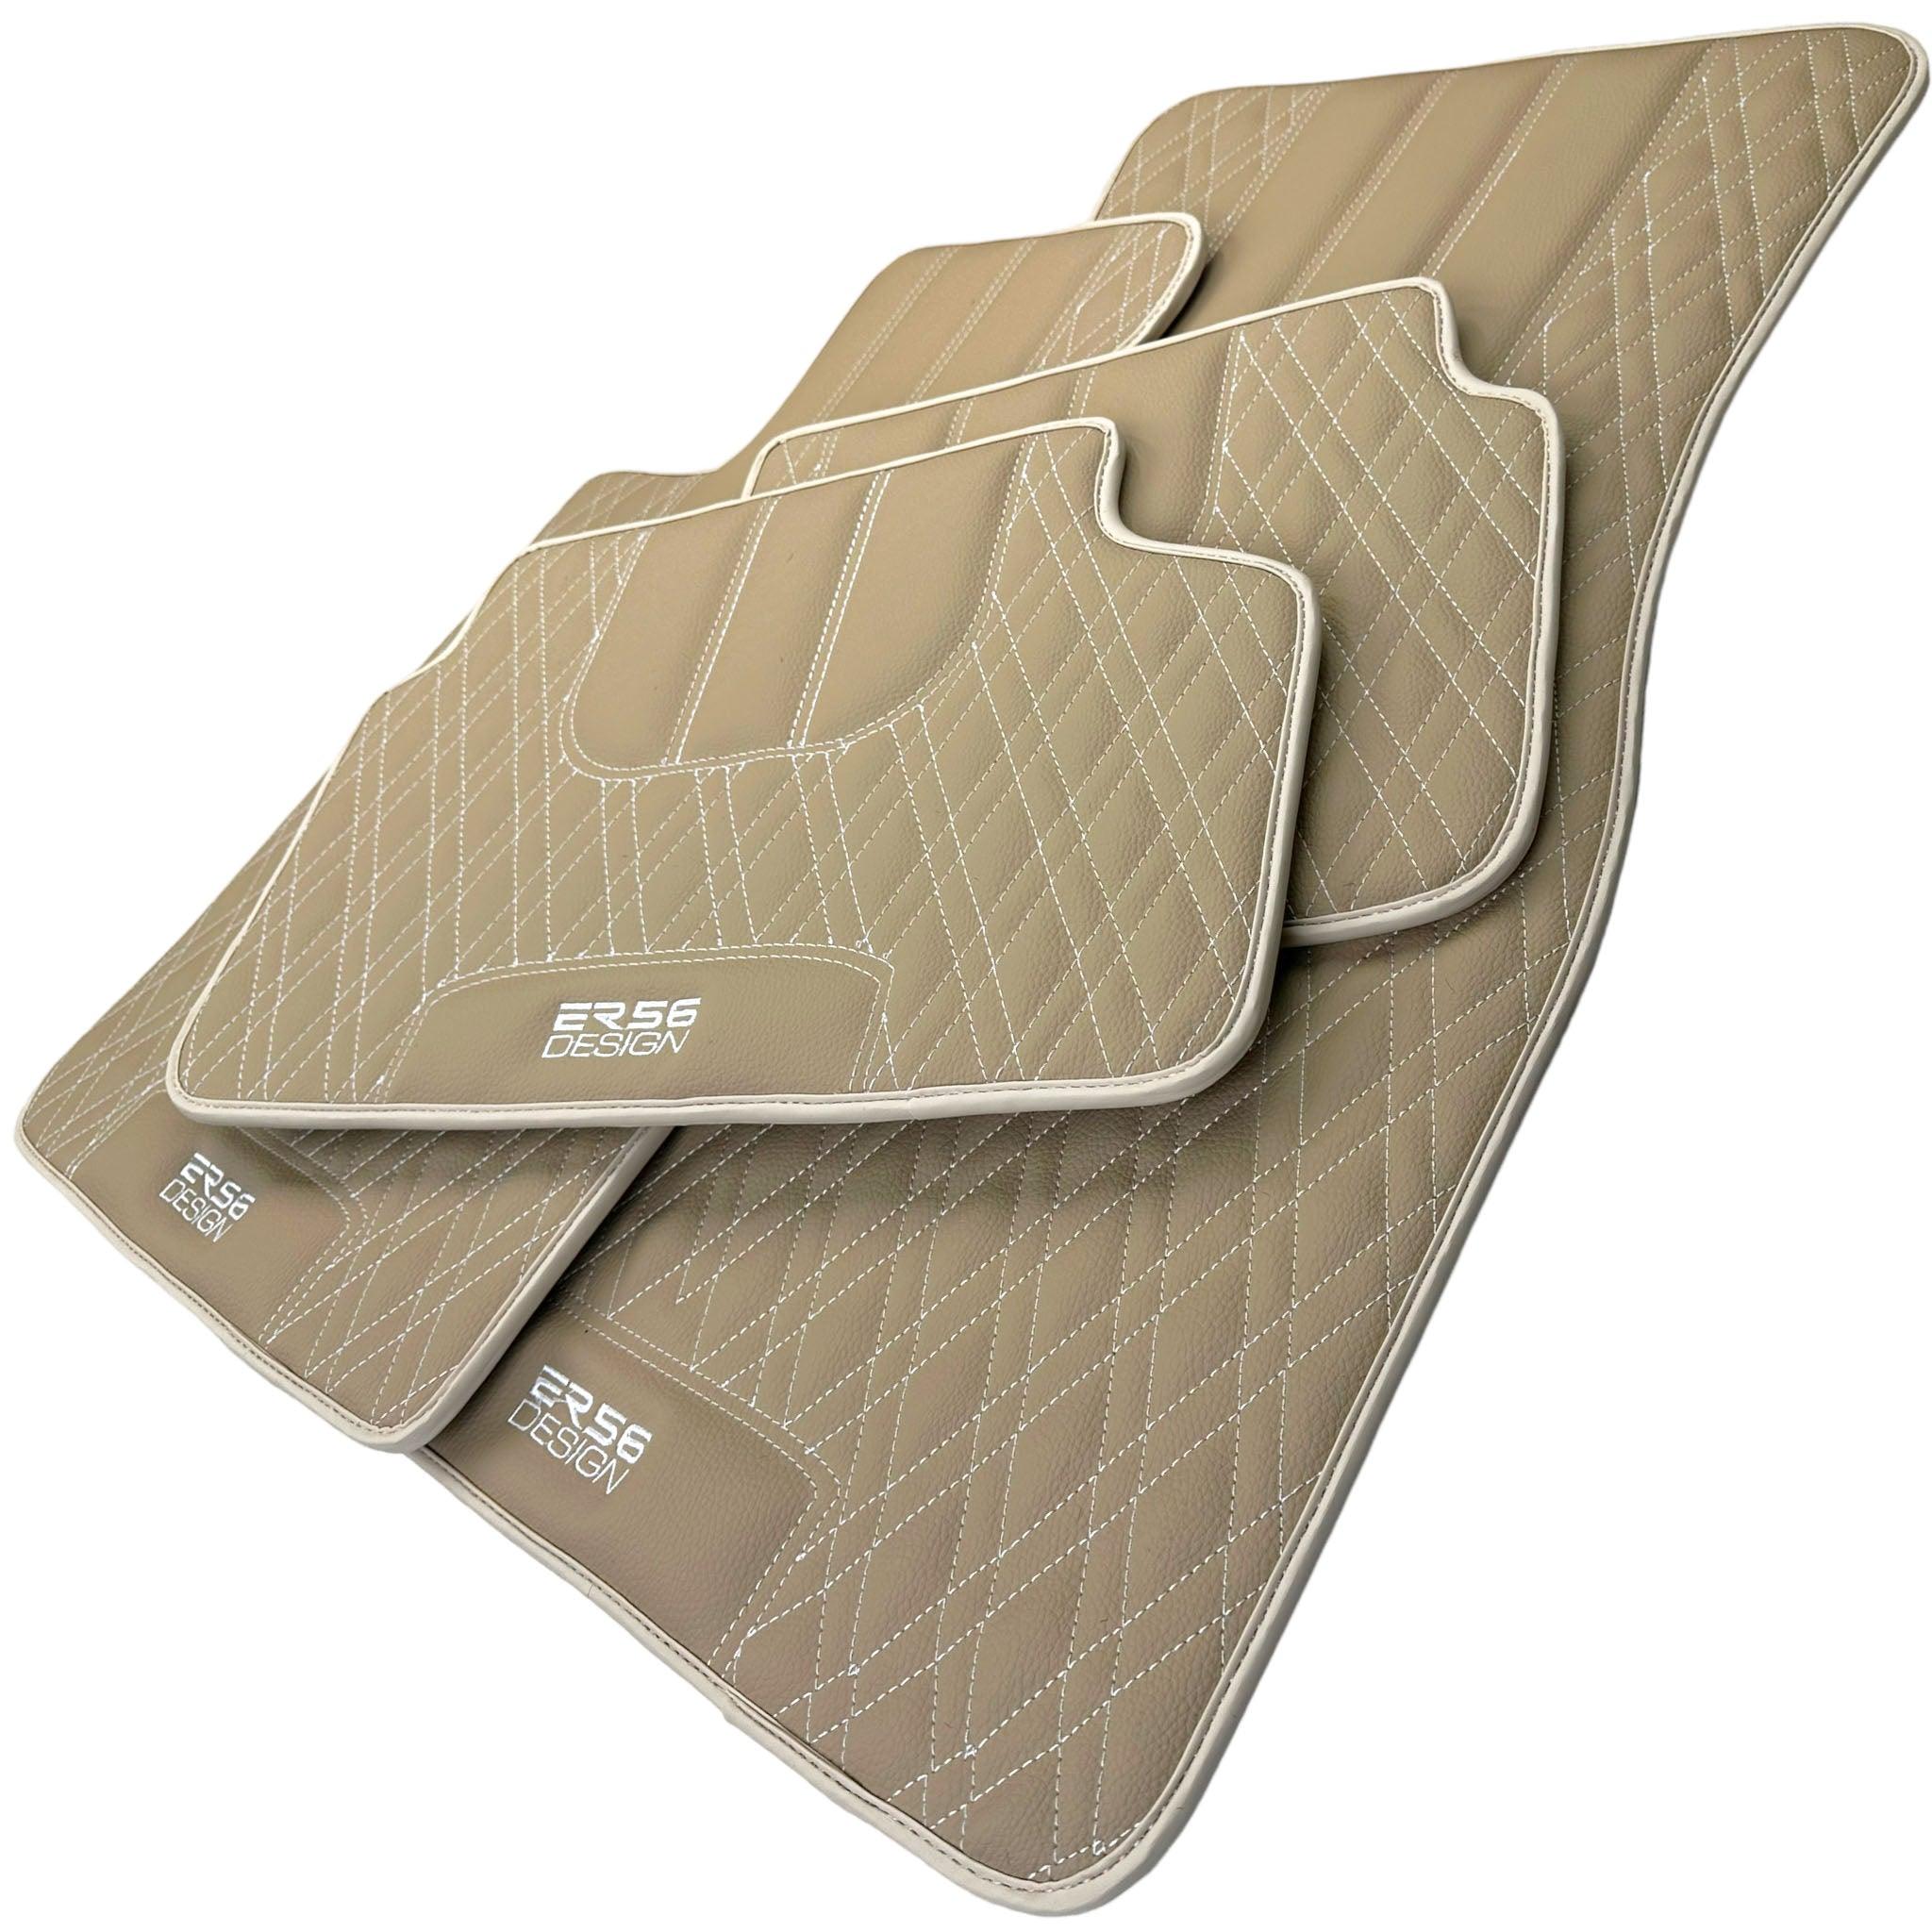 Beige Leather Floor Floor Mats For BMW X6 Series G06